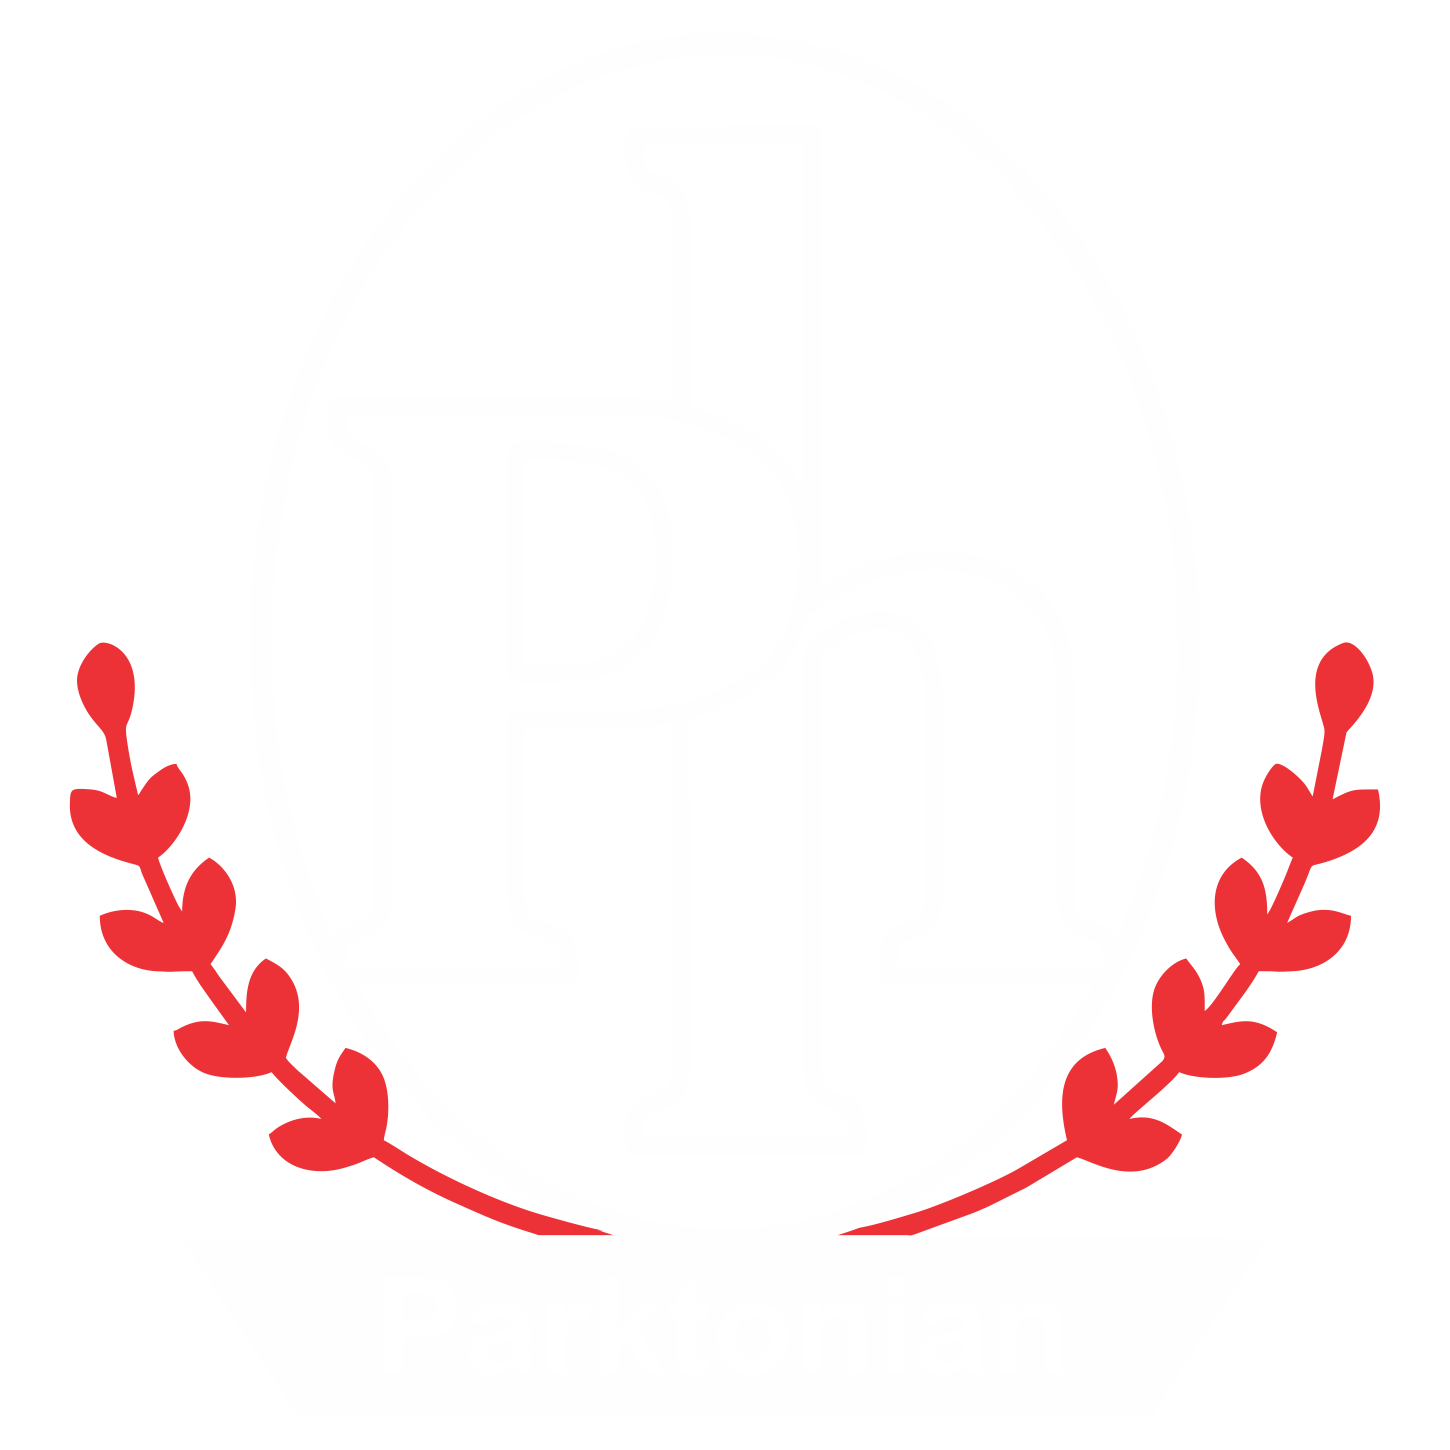 Parktonian Hotels